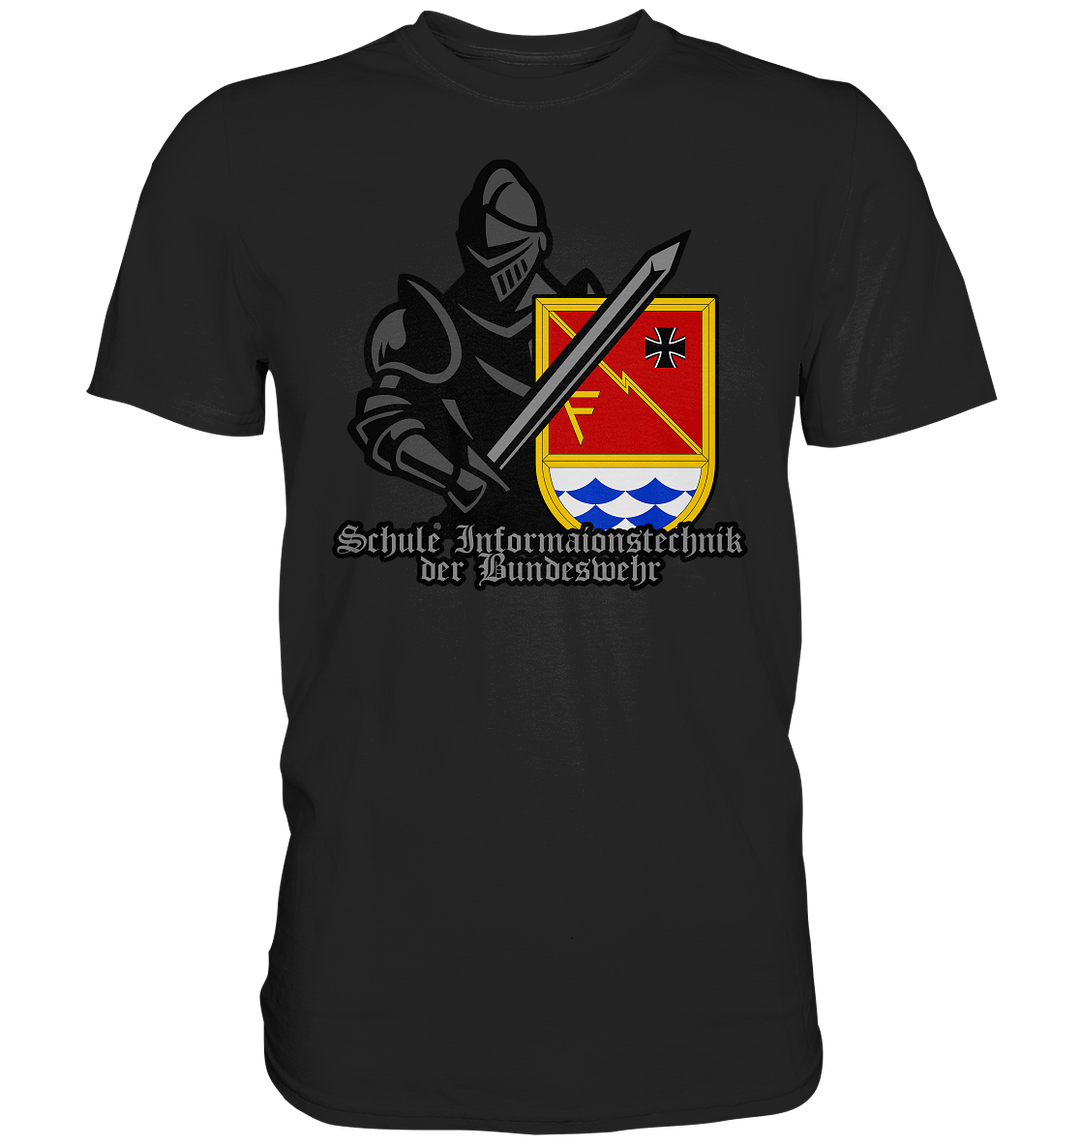 "Schule Informationstechnik der Bundeswehr - Ritter" - Premium Shirt